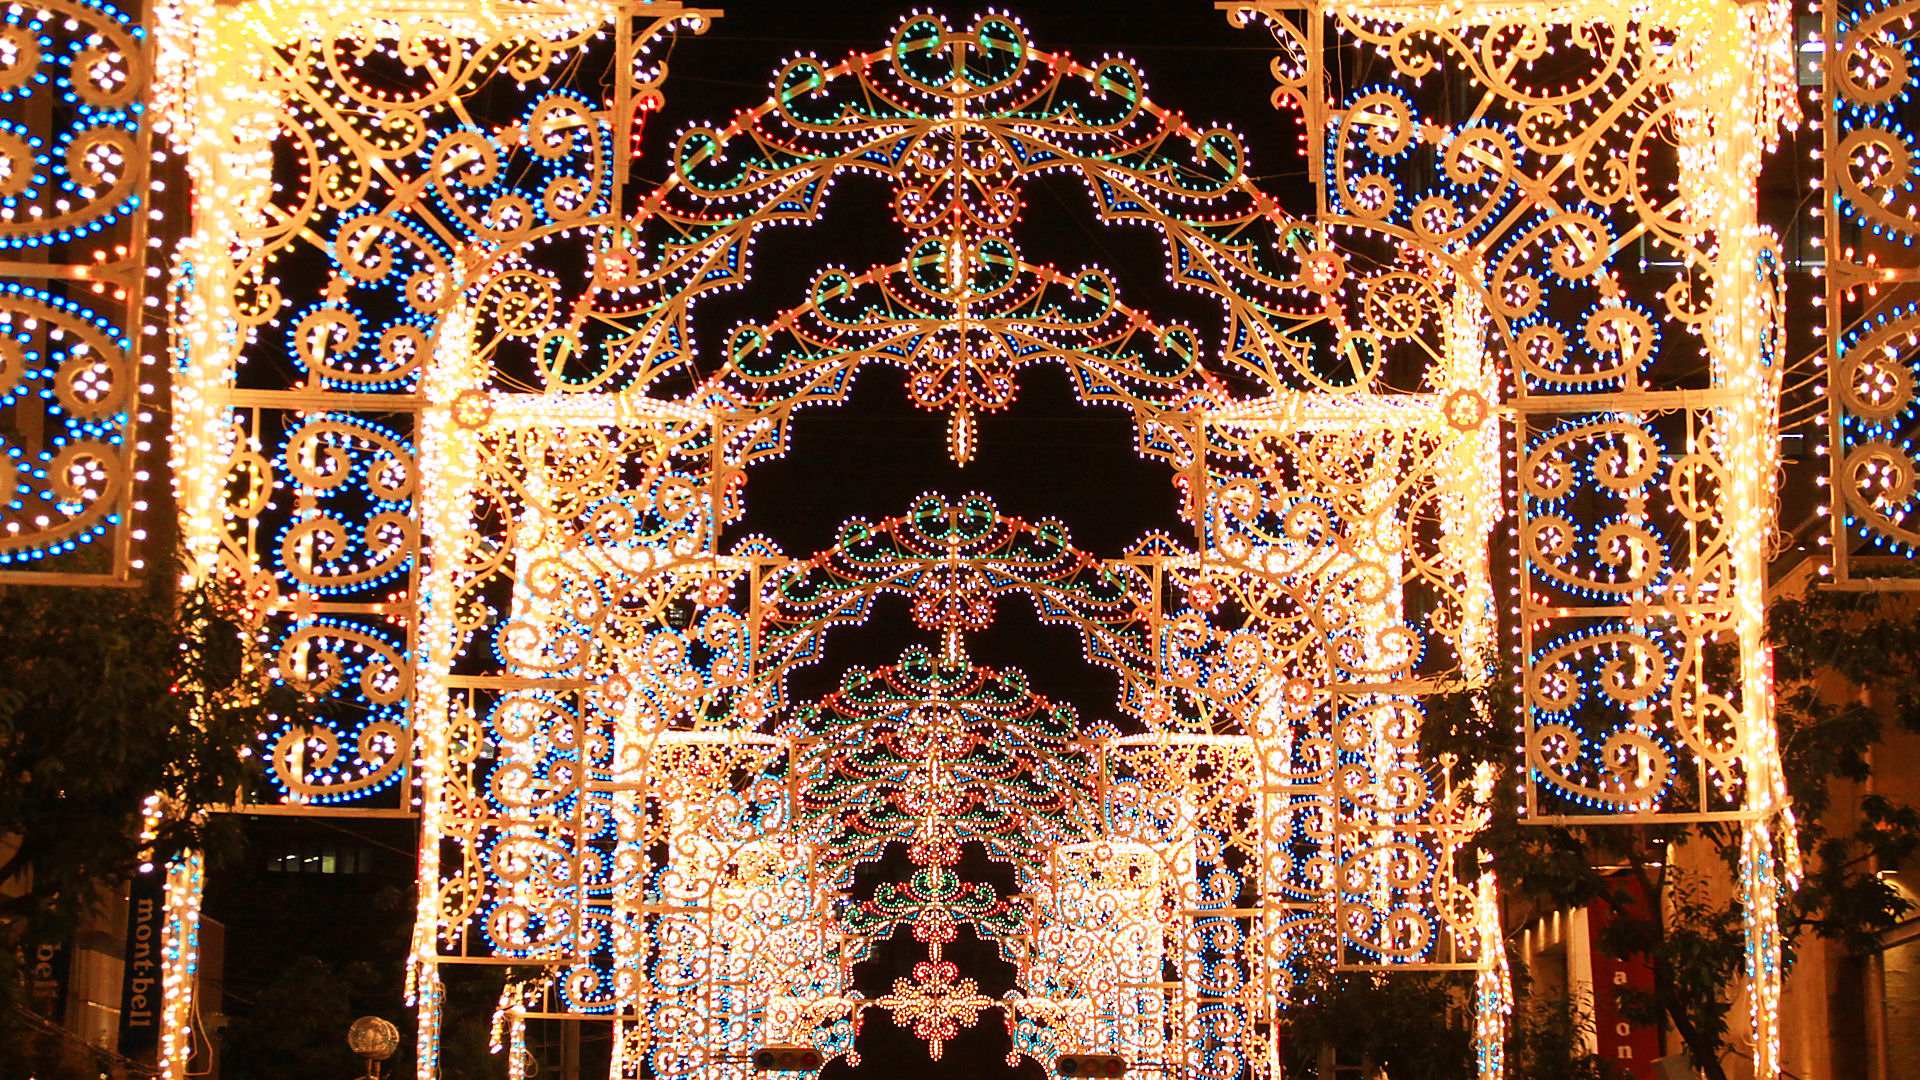 クリスマスイルミネーション 神戸夜景壁紙 無料壁紙 神戸の夜景情報11 神戸夜景壁紙ブログ